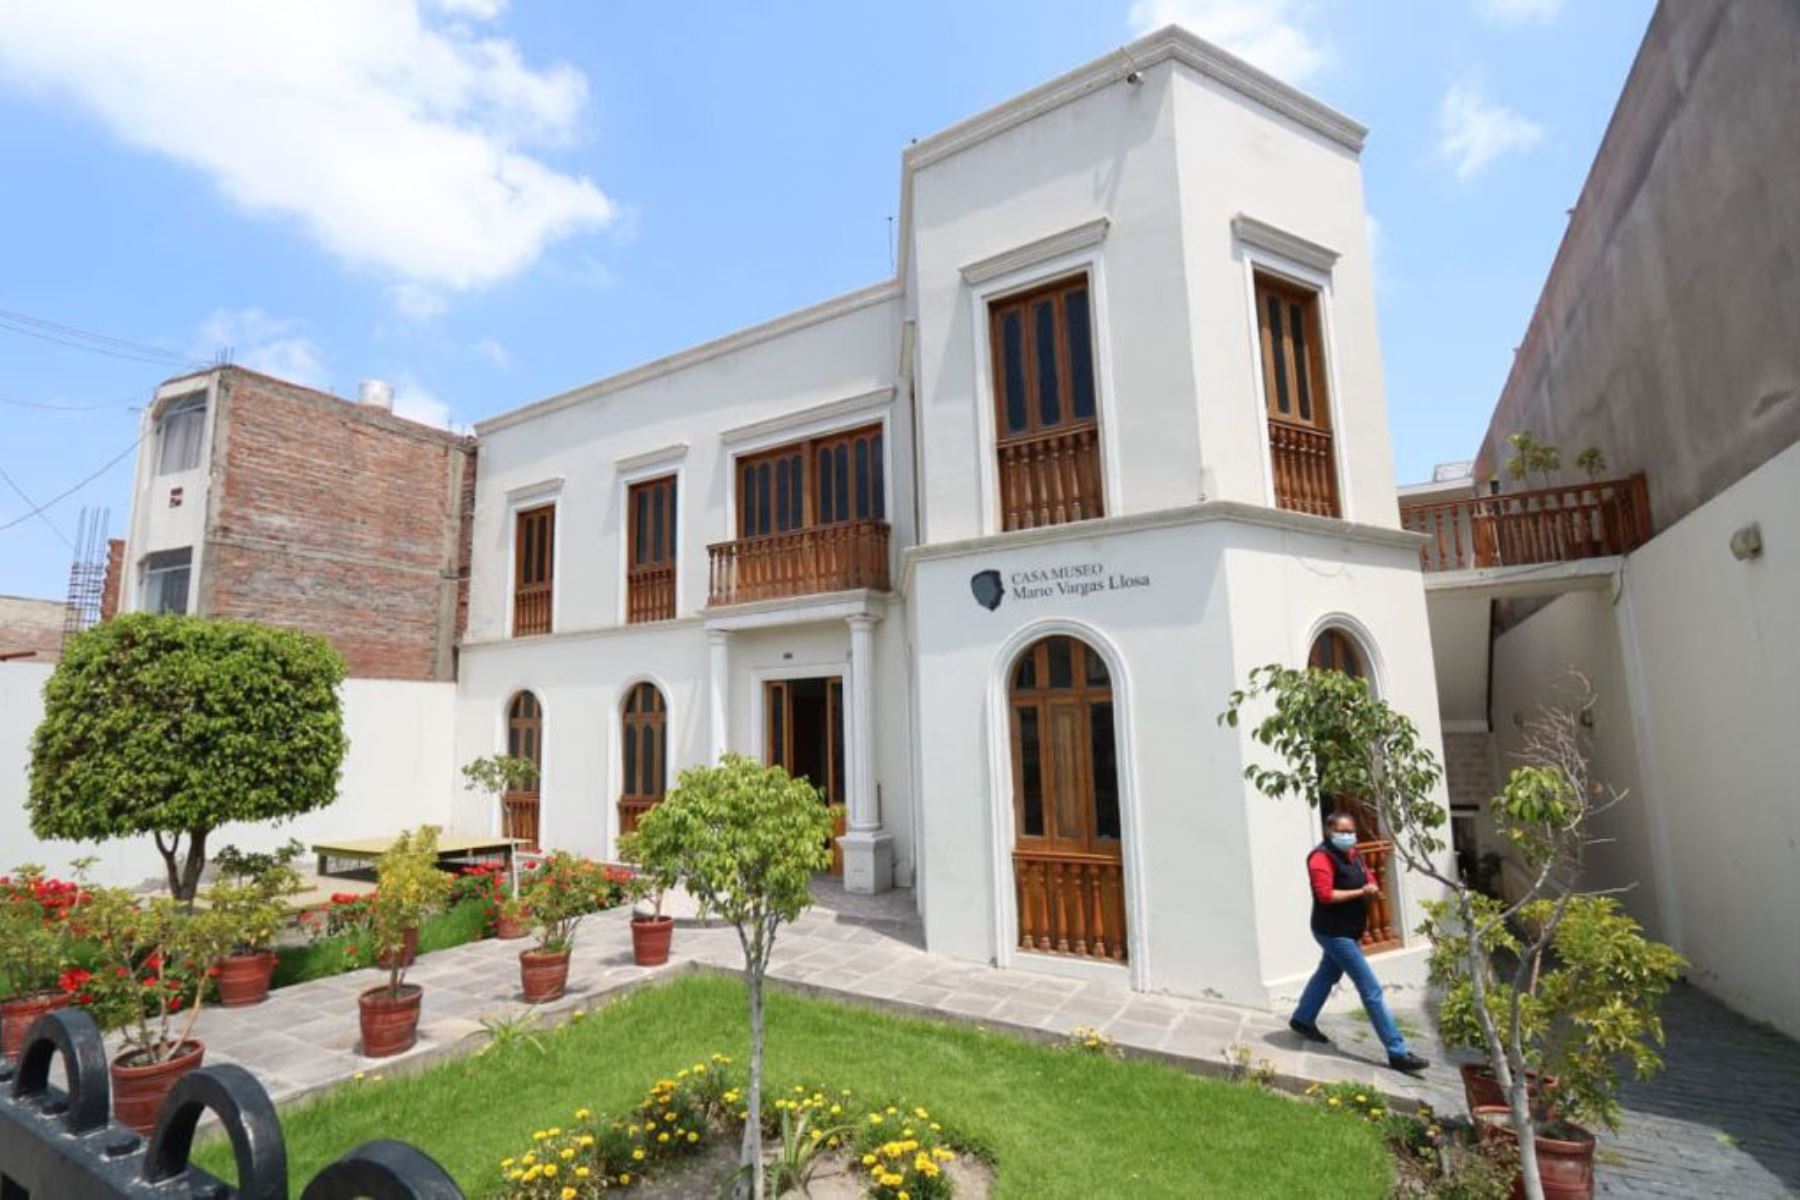 Los visitantes a la Casa Museo Mario Vargas Llosa de Arequipa podrán conocer más sobre la vida del escritor arequipeño a través de la animación 3D, hologramas y equipos de alta tecnología instalados en la vivienda.